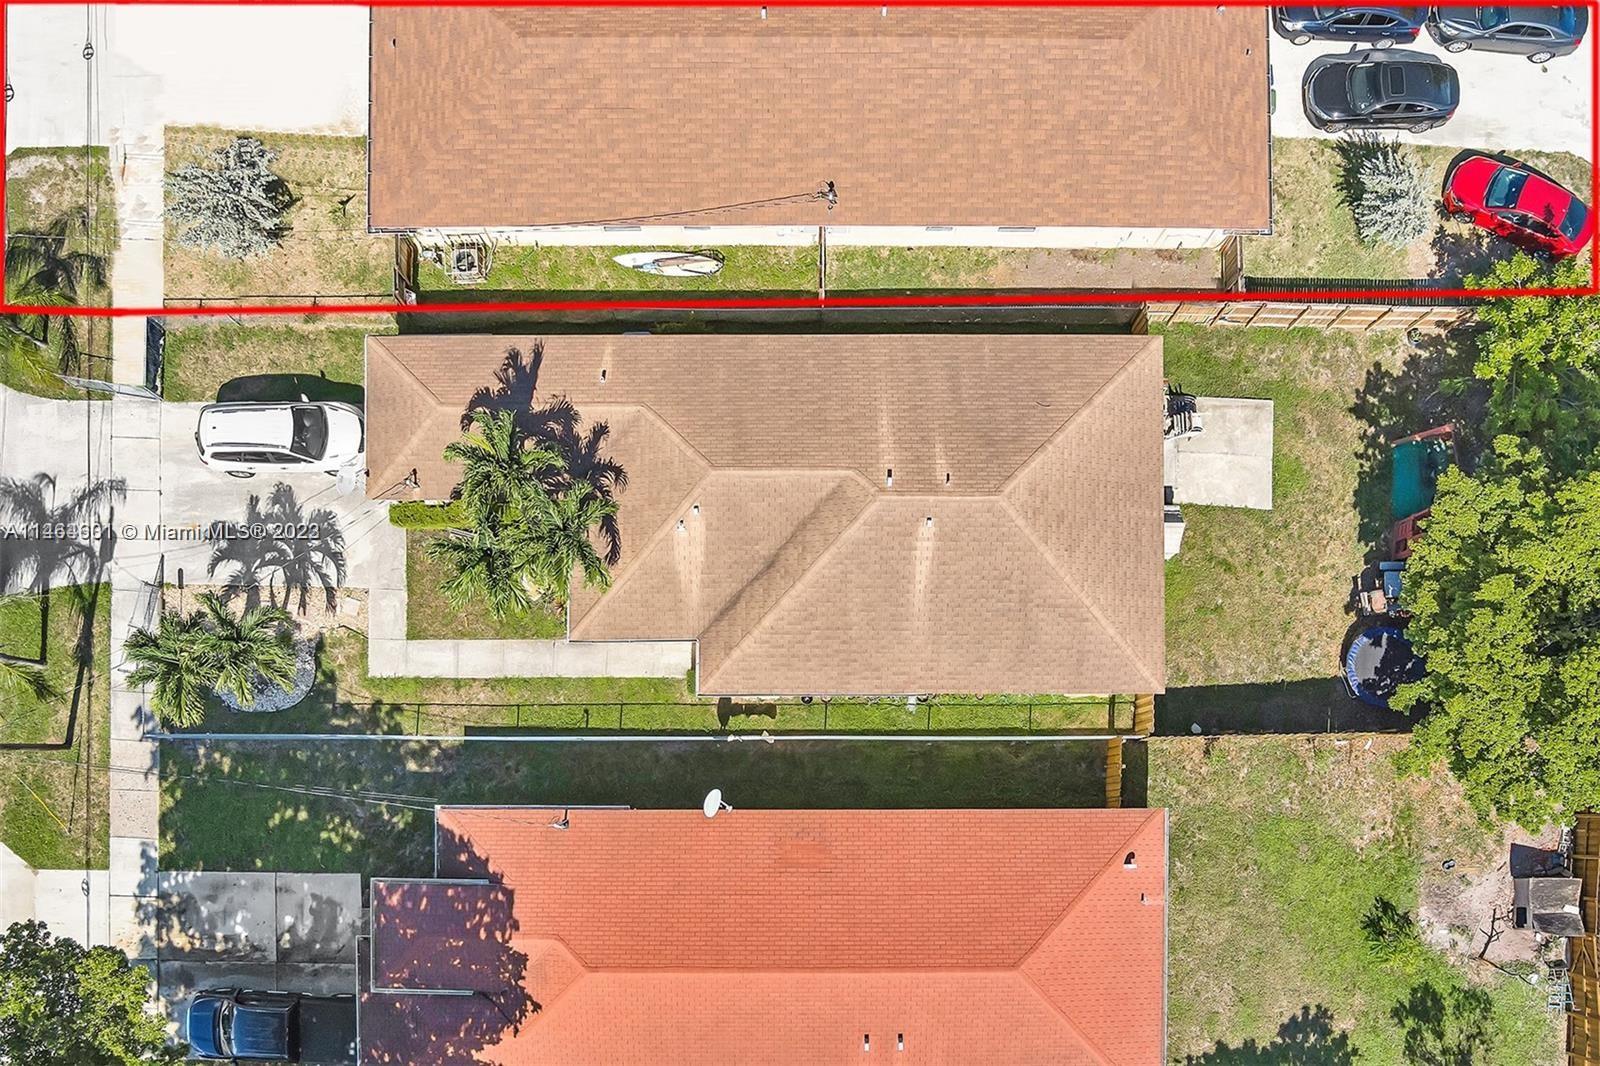 Rental Property at 219 Nw 7th Ct, Hallandale Beach, Broward County, Florida -  - $825,000 MO.